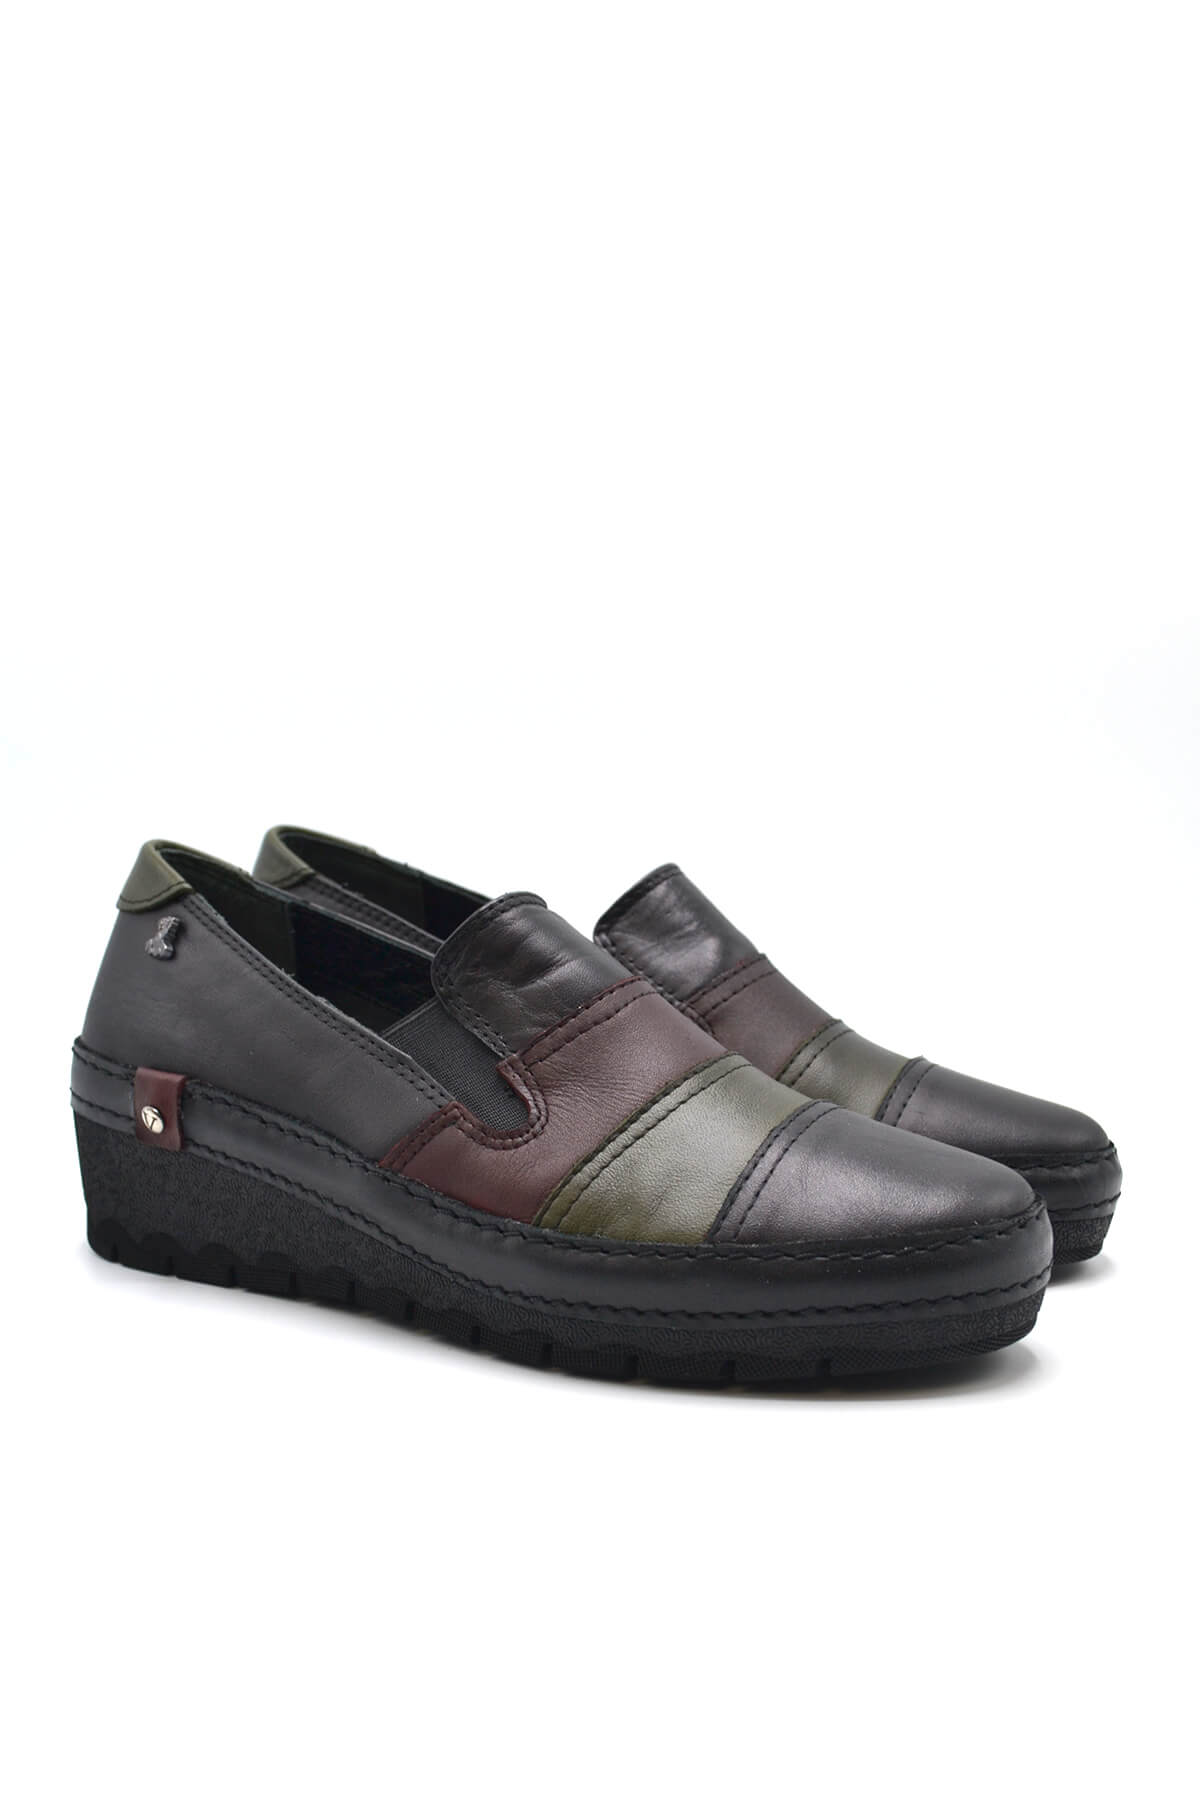 Kadın Comfort Deri Ayakkabı Siyah 2213507K